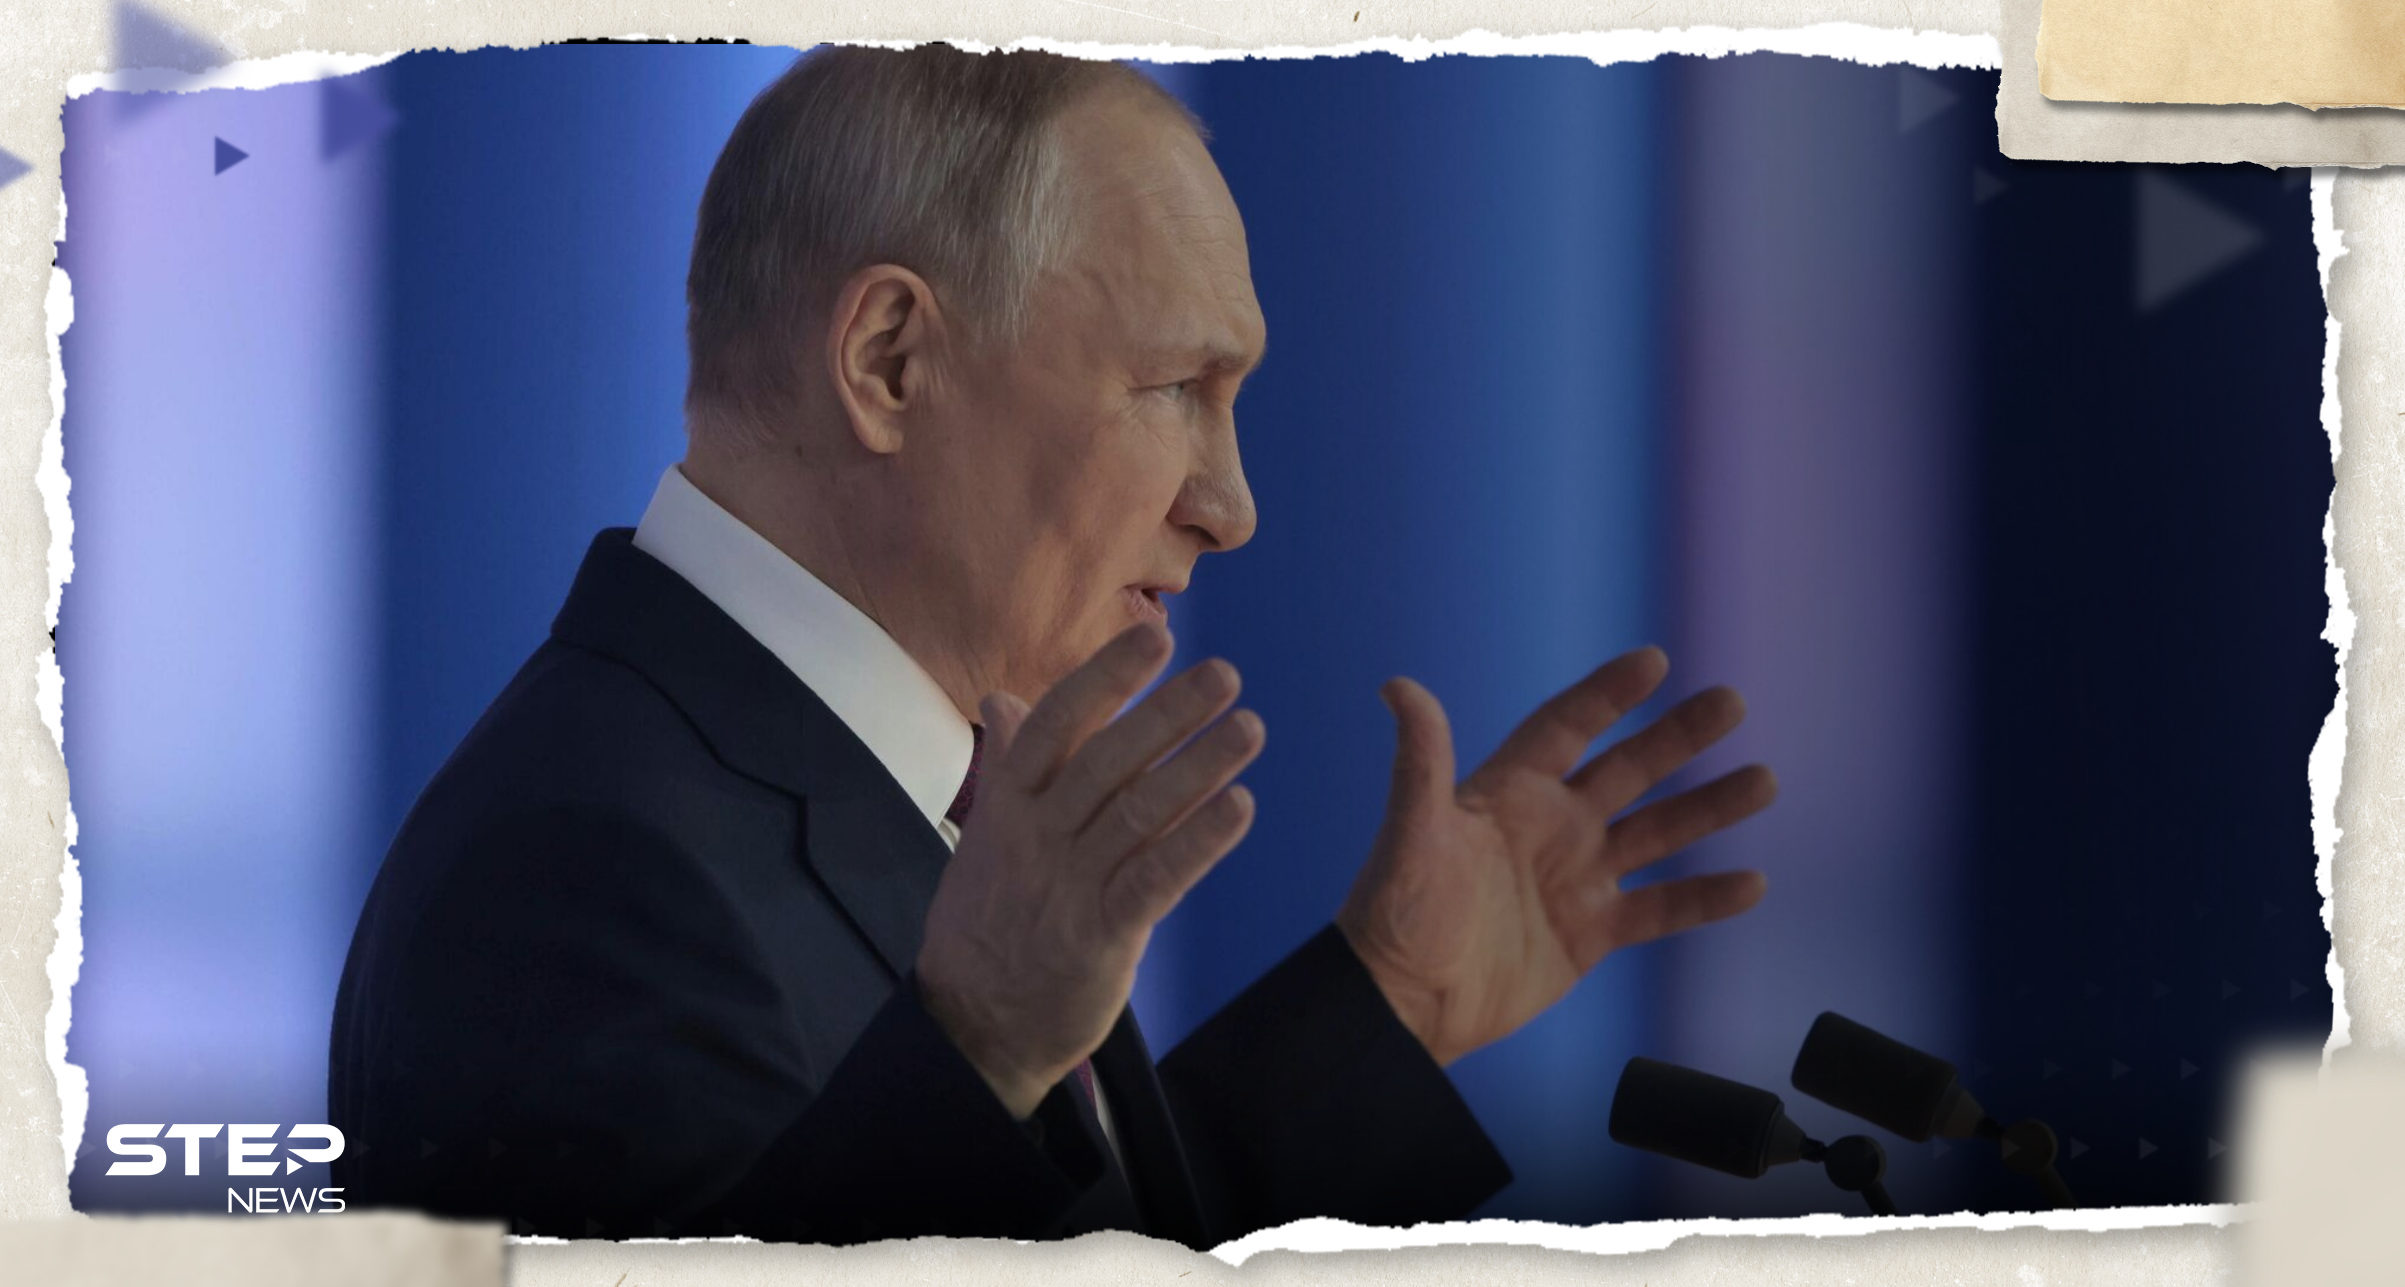 بوتين يكشف عن ضرب موقع "مهم" بأوكرانيا ويتحدث عن "خطر آخر"